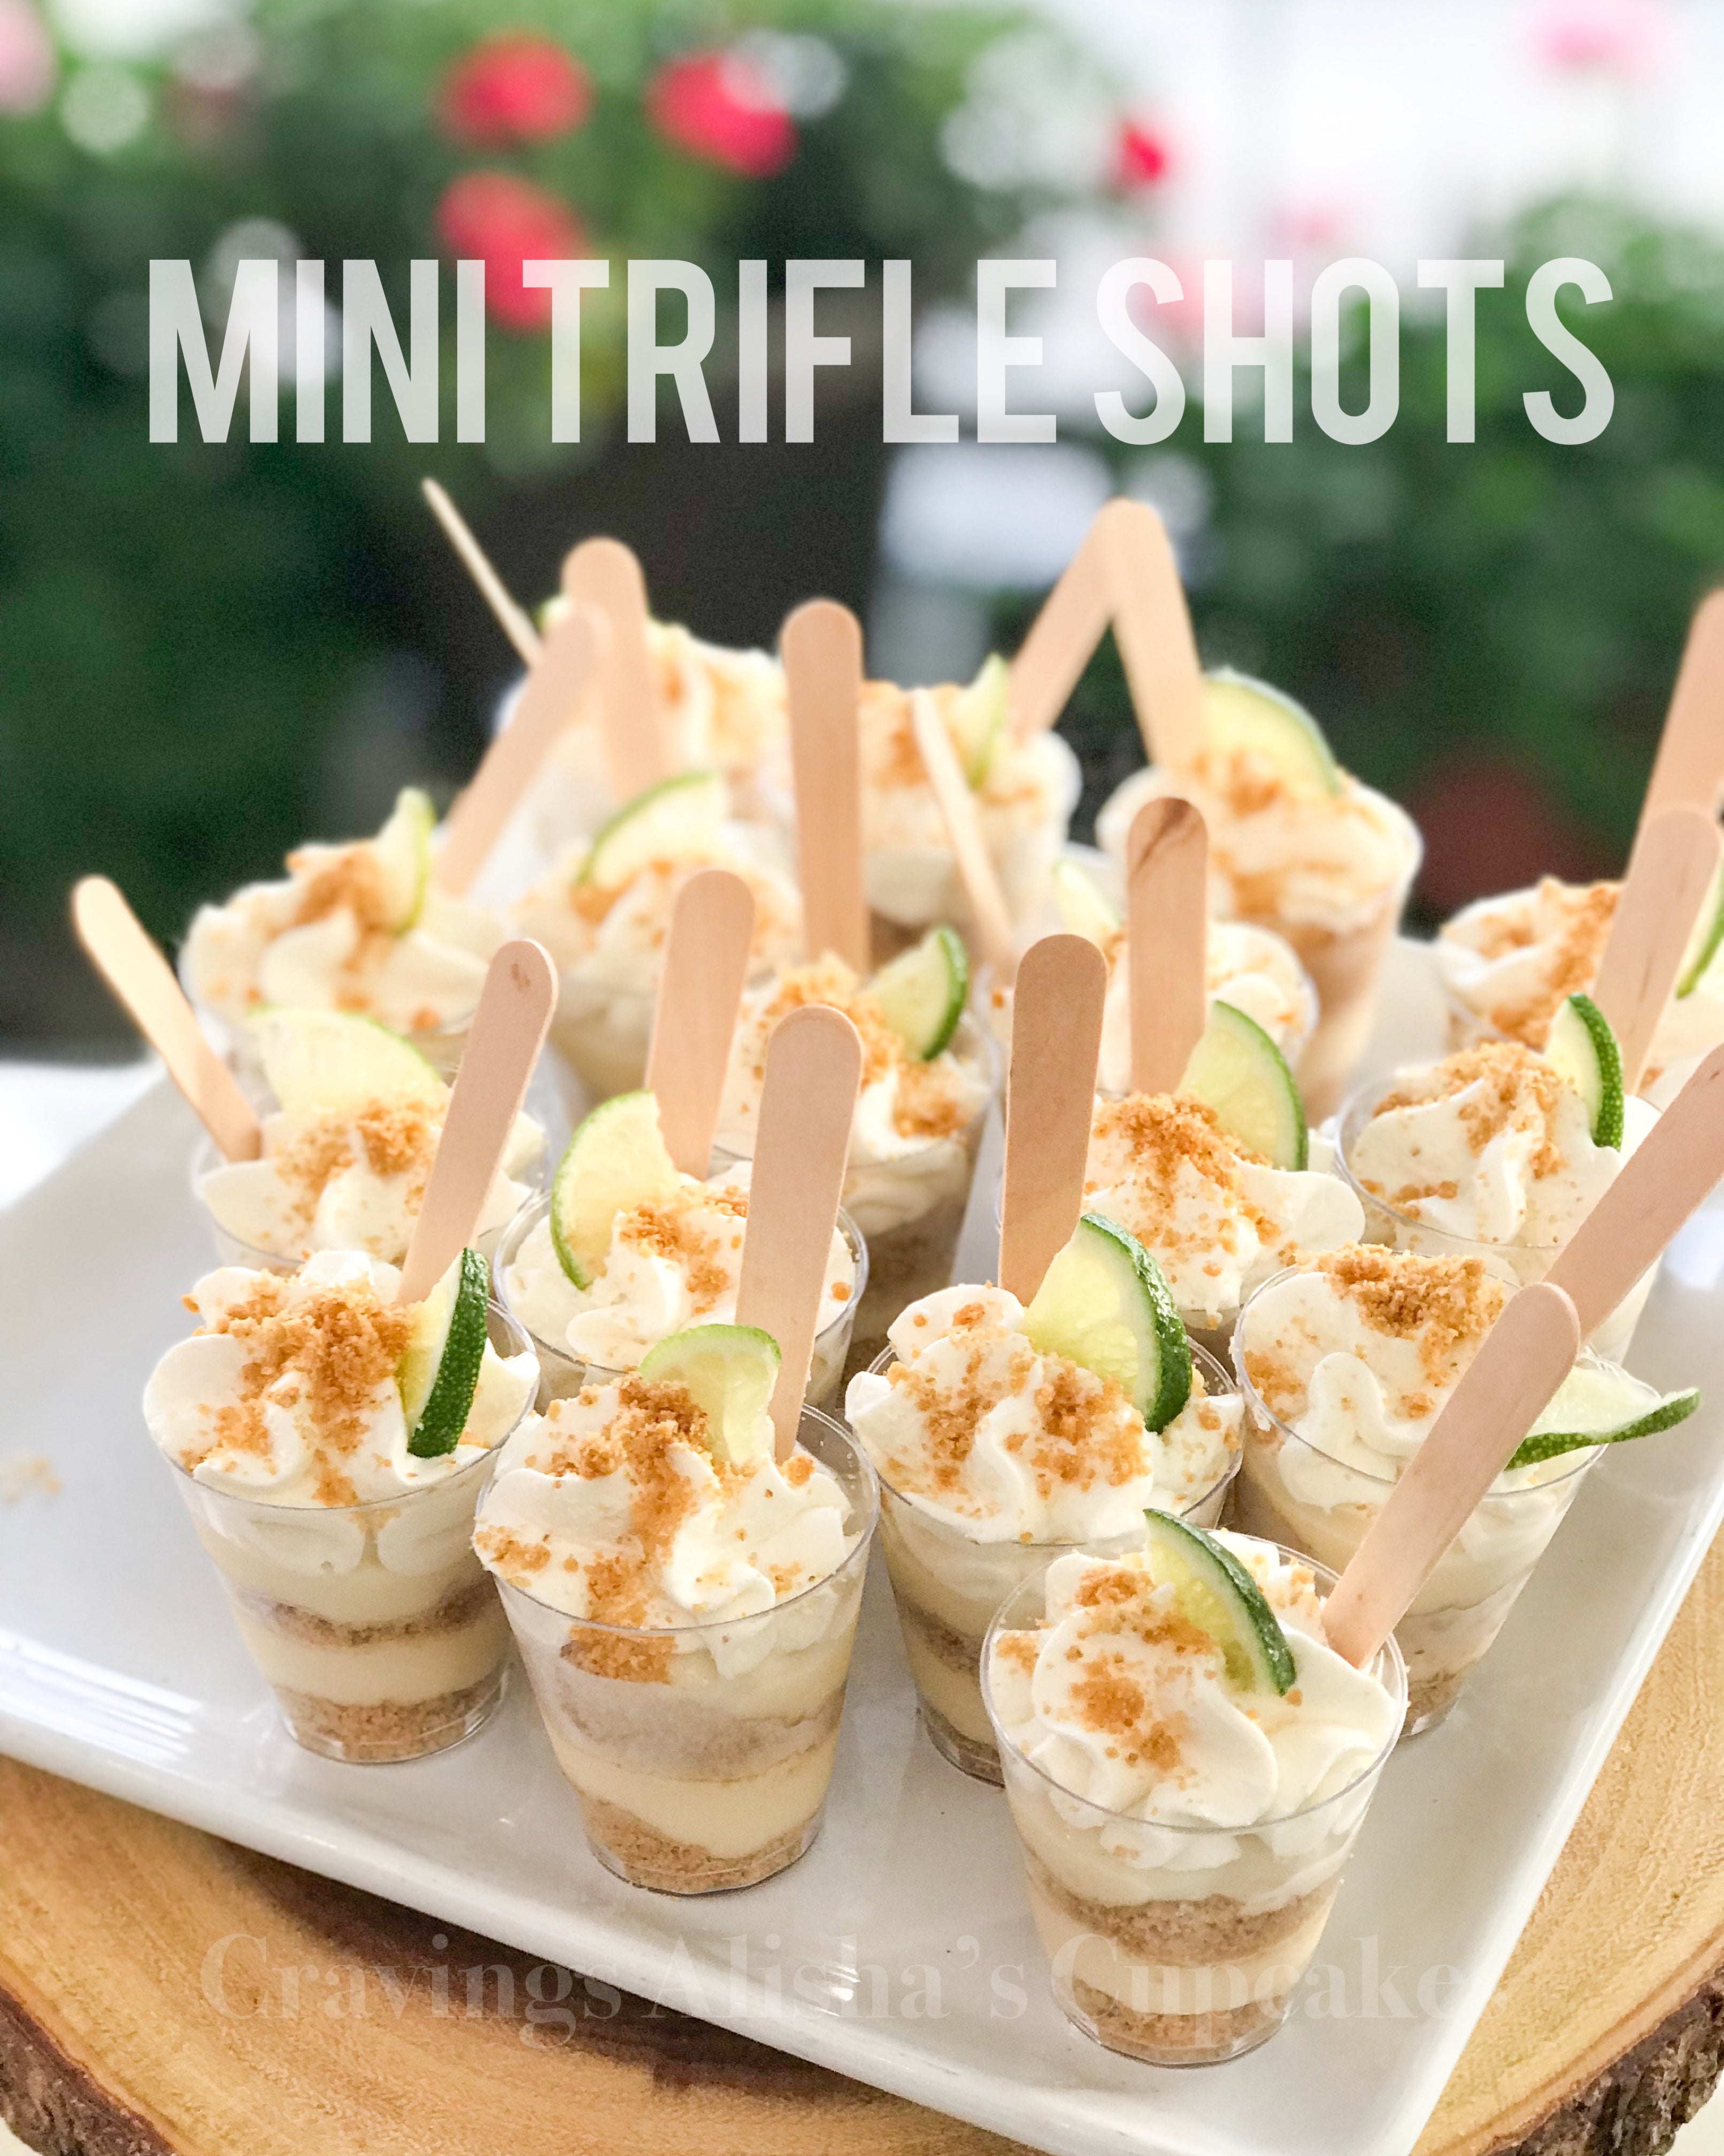 ⭐️All inclusive Catering Mini Trifle Shots